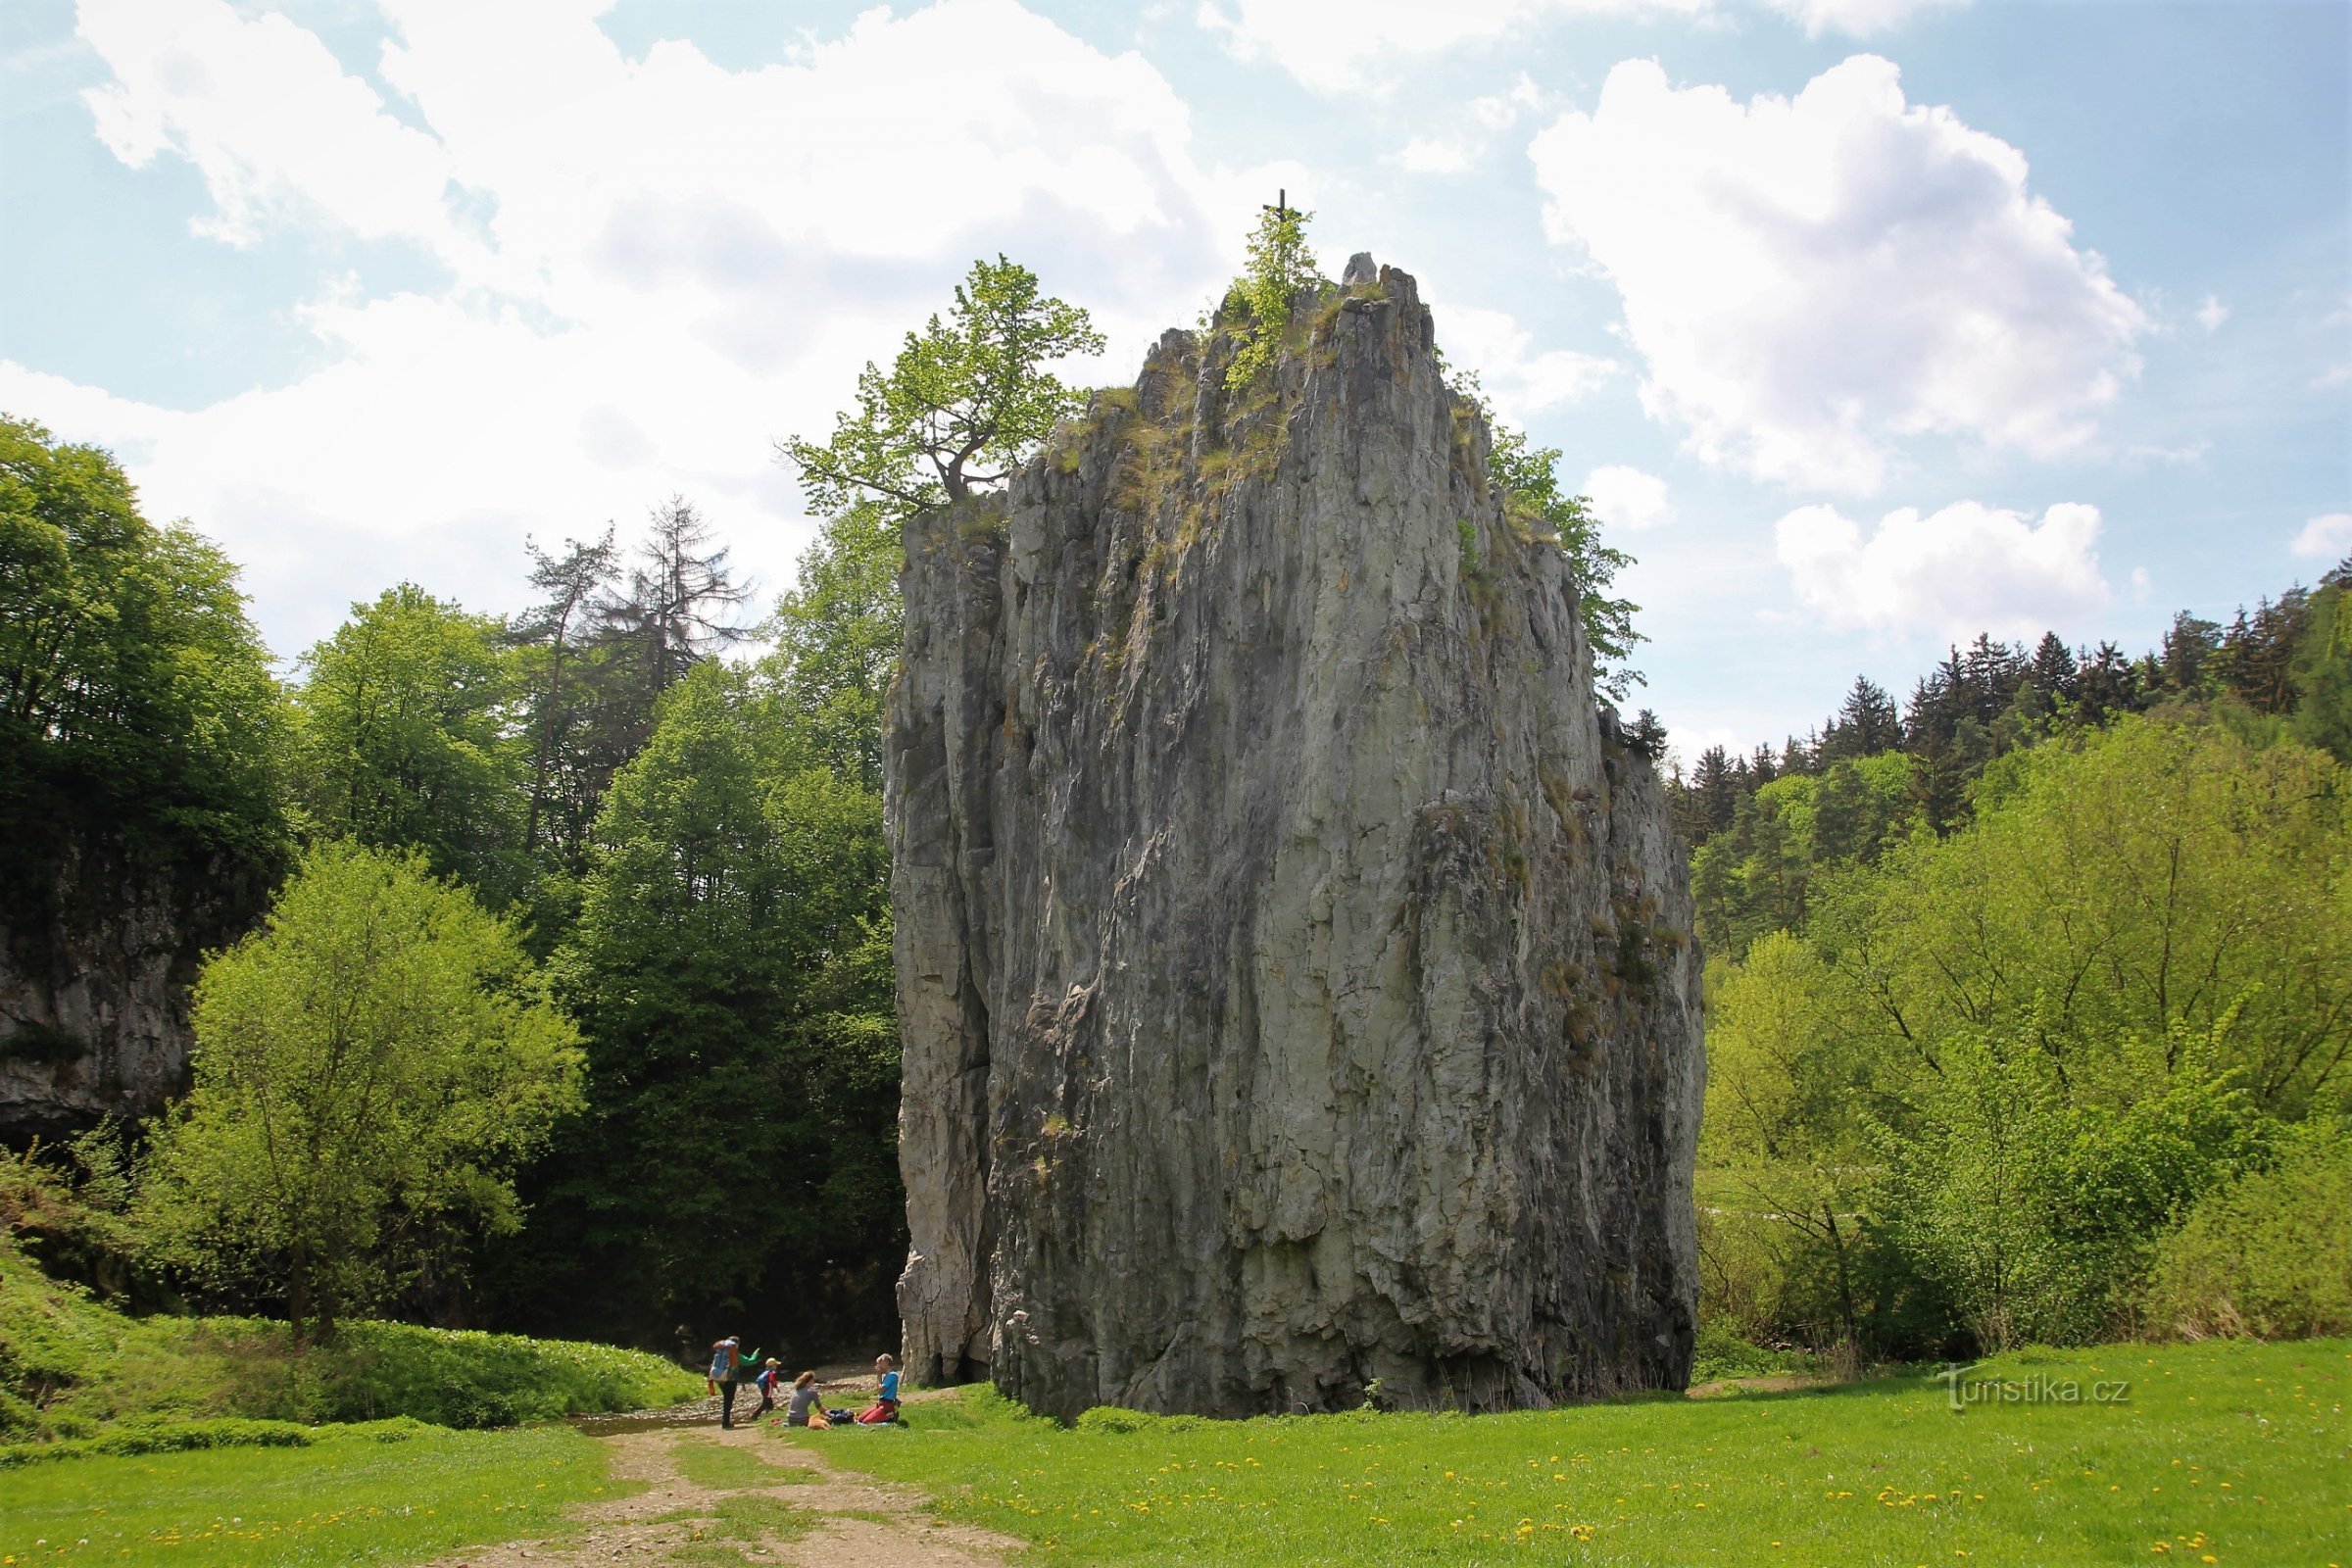 Formação rochosa Hřebenáč em frente às cavernas